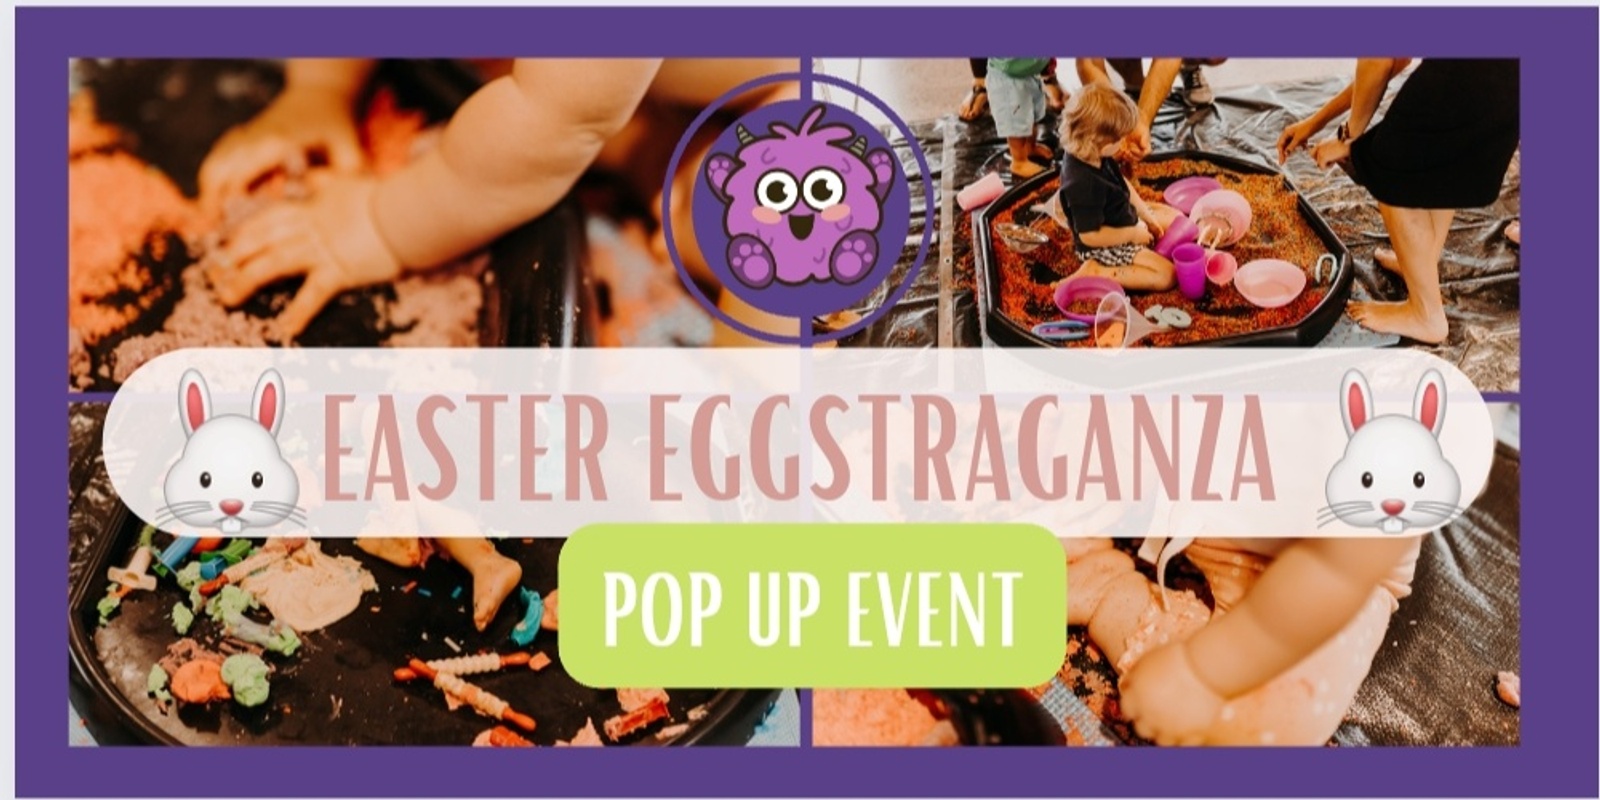 Banner image for Easter EGGSTRAGANZA - POP UP